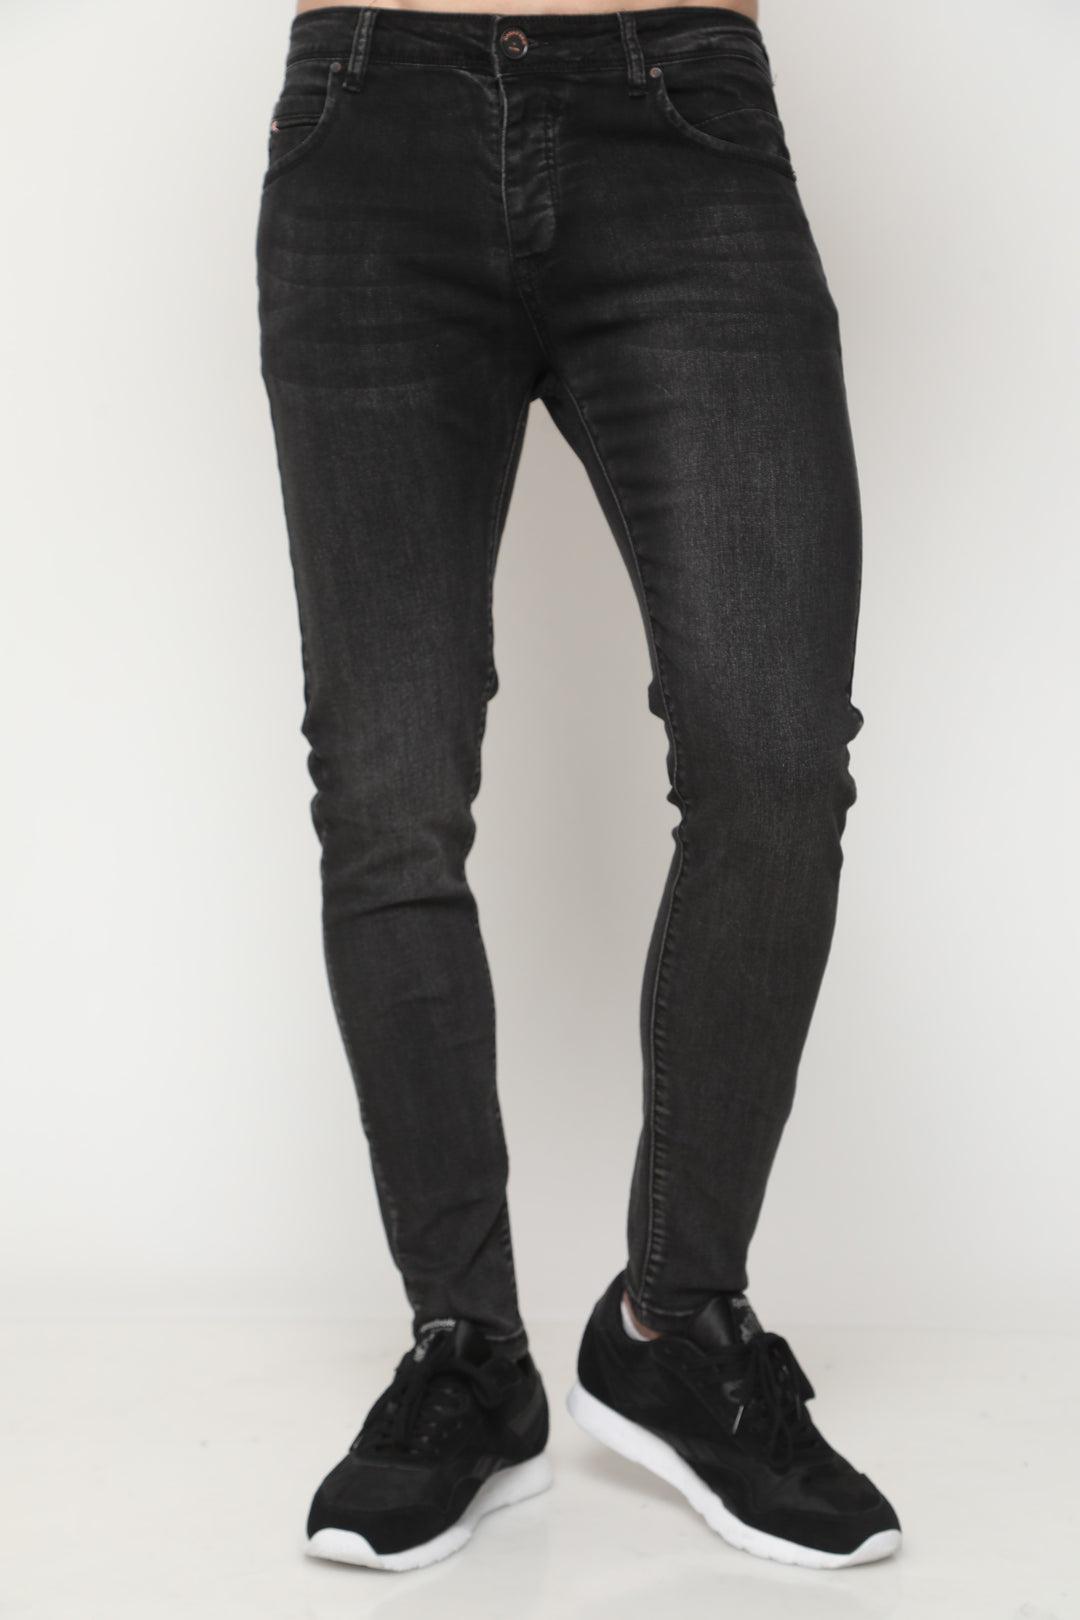 123 ג'ינס  סקיני | Canavaro Jeans